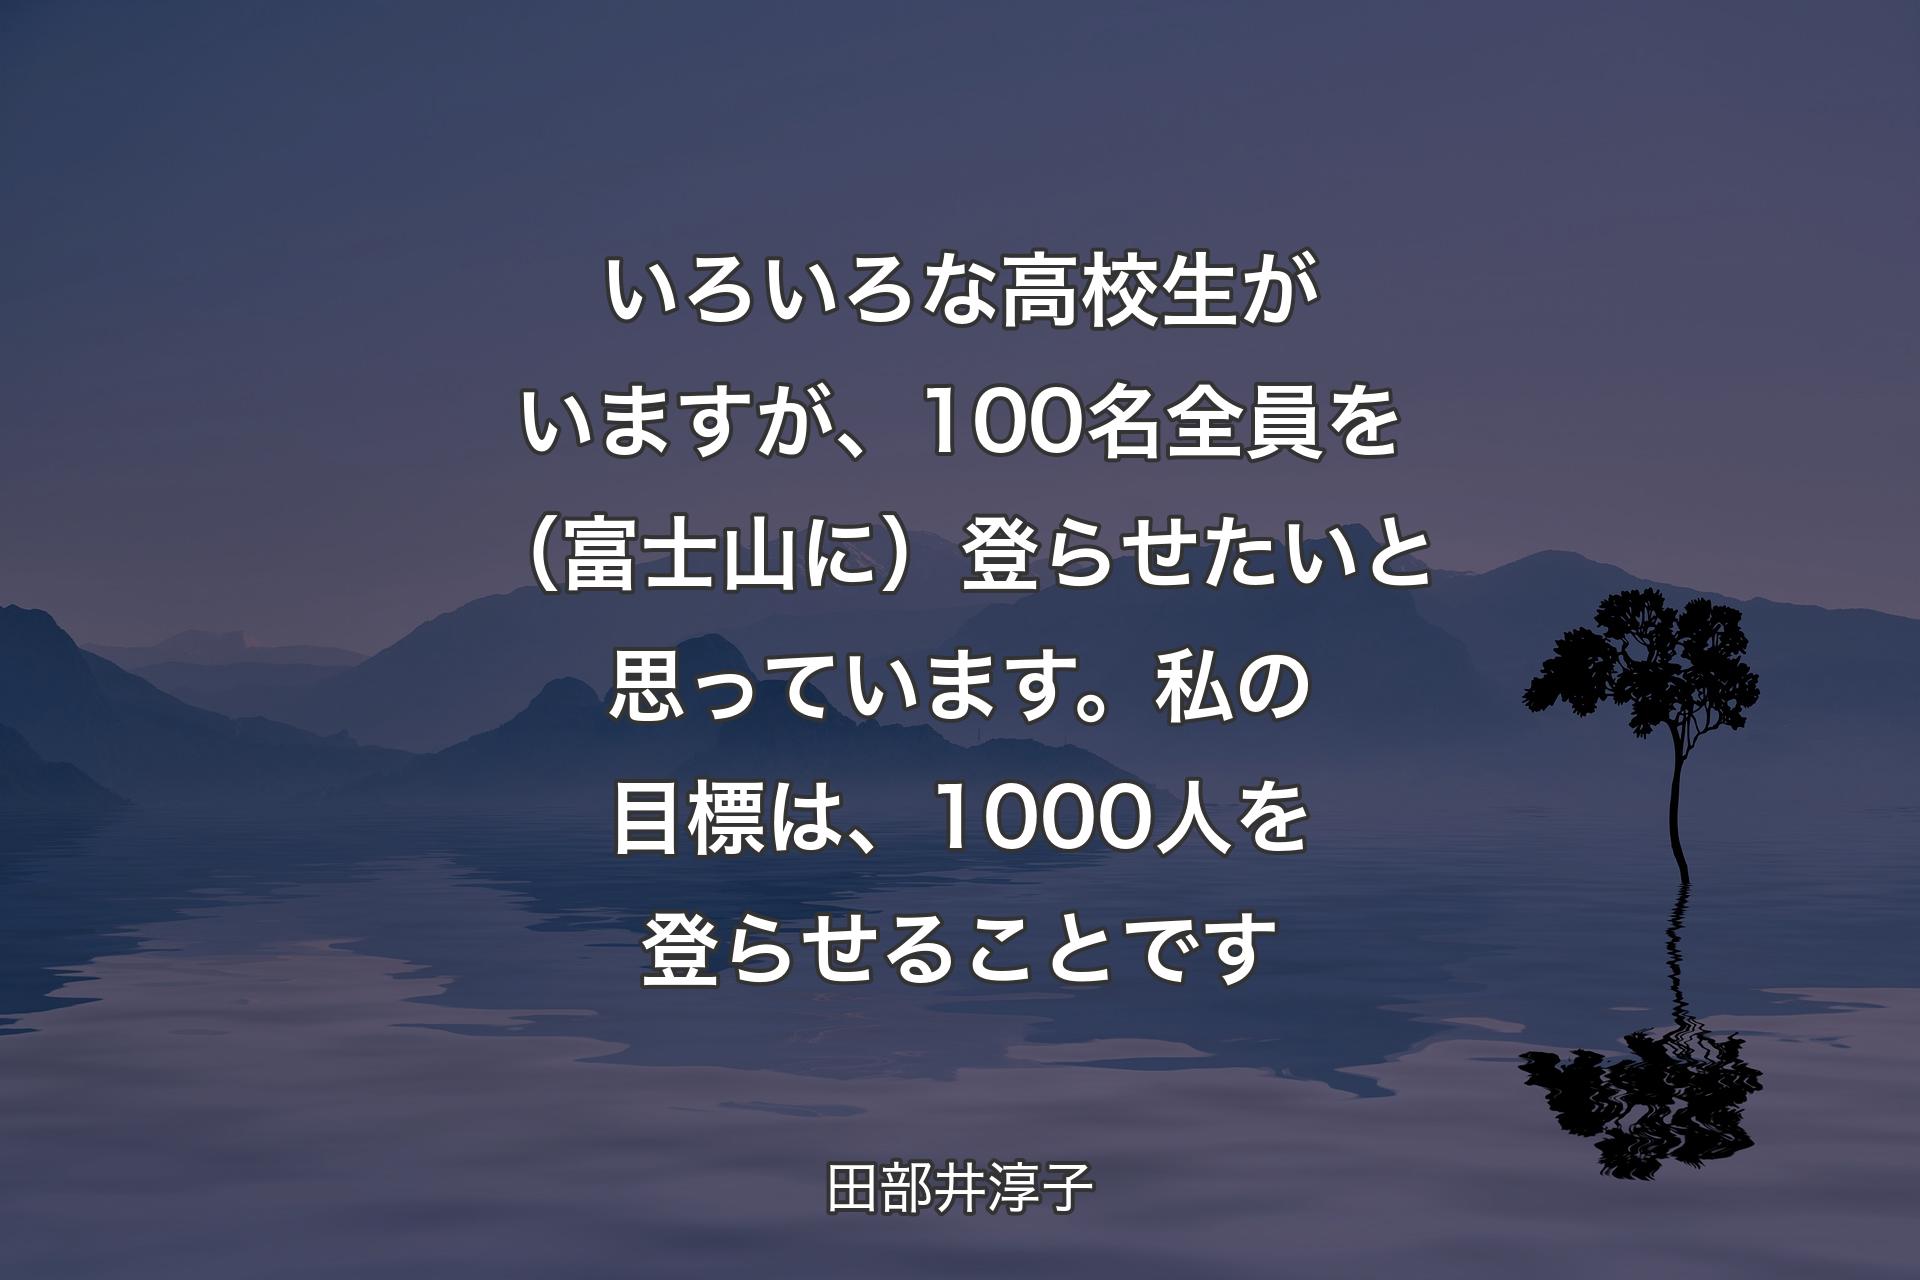 いろいろな高校生がいますが、100名全員を（富士山に）登らせたいと思っています。私の目標は、1000人を登らせることです - 田部井淳子